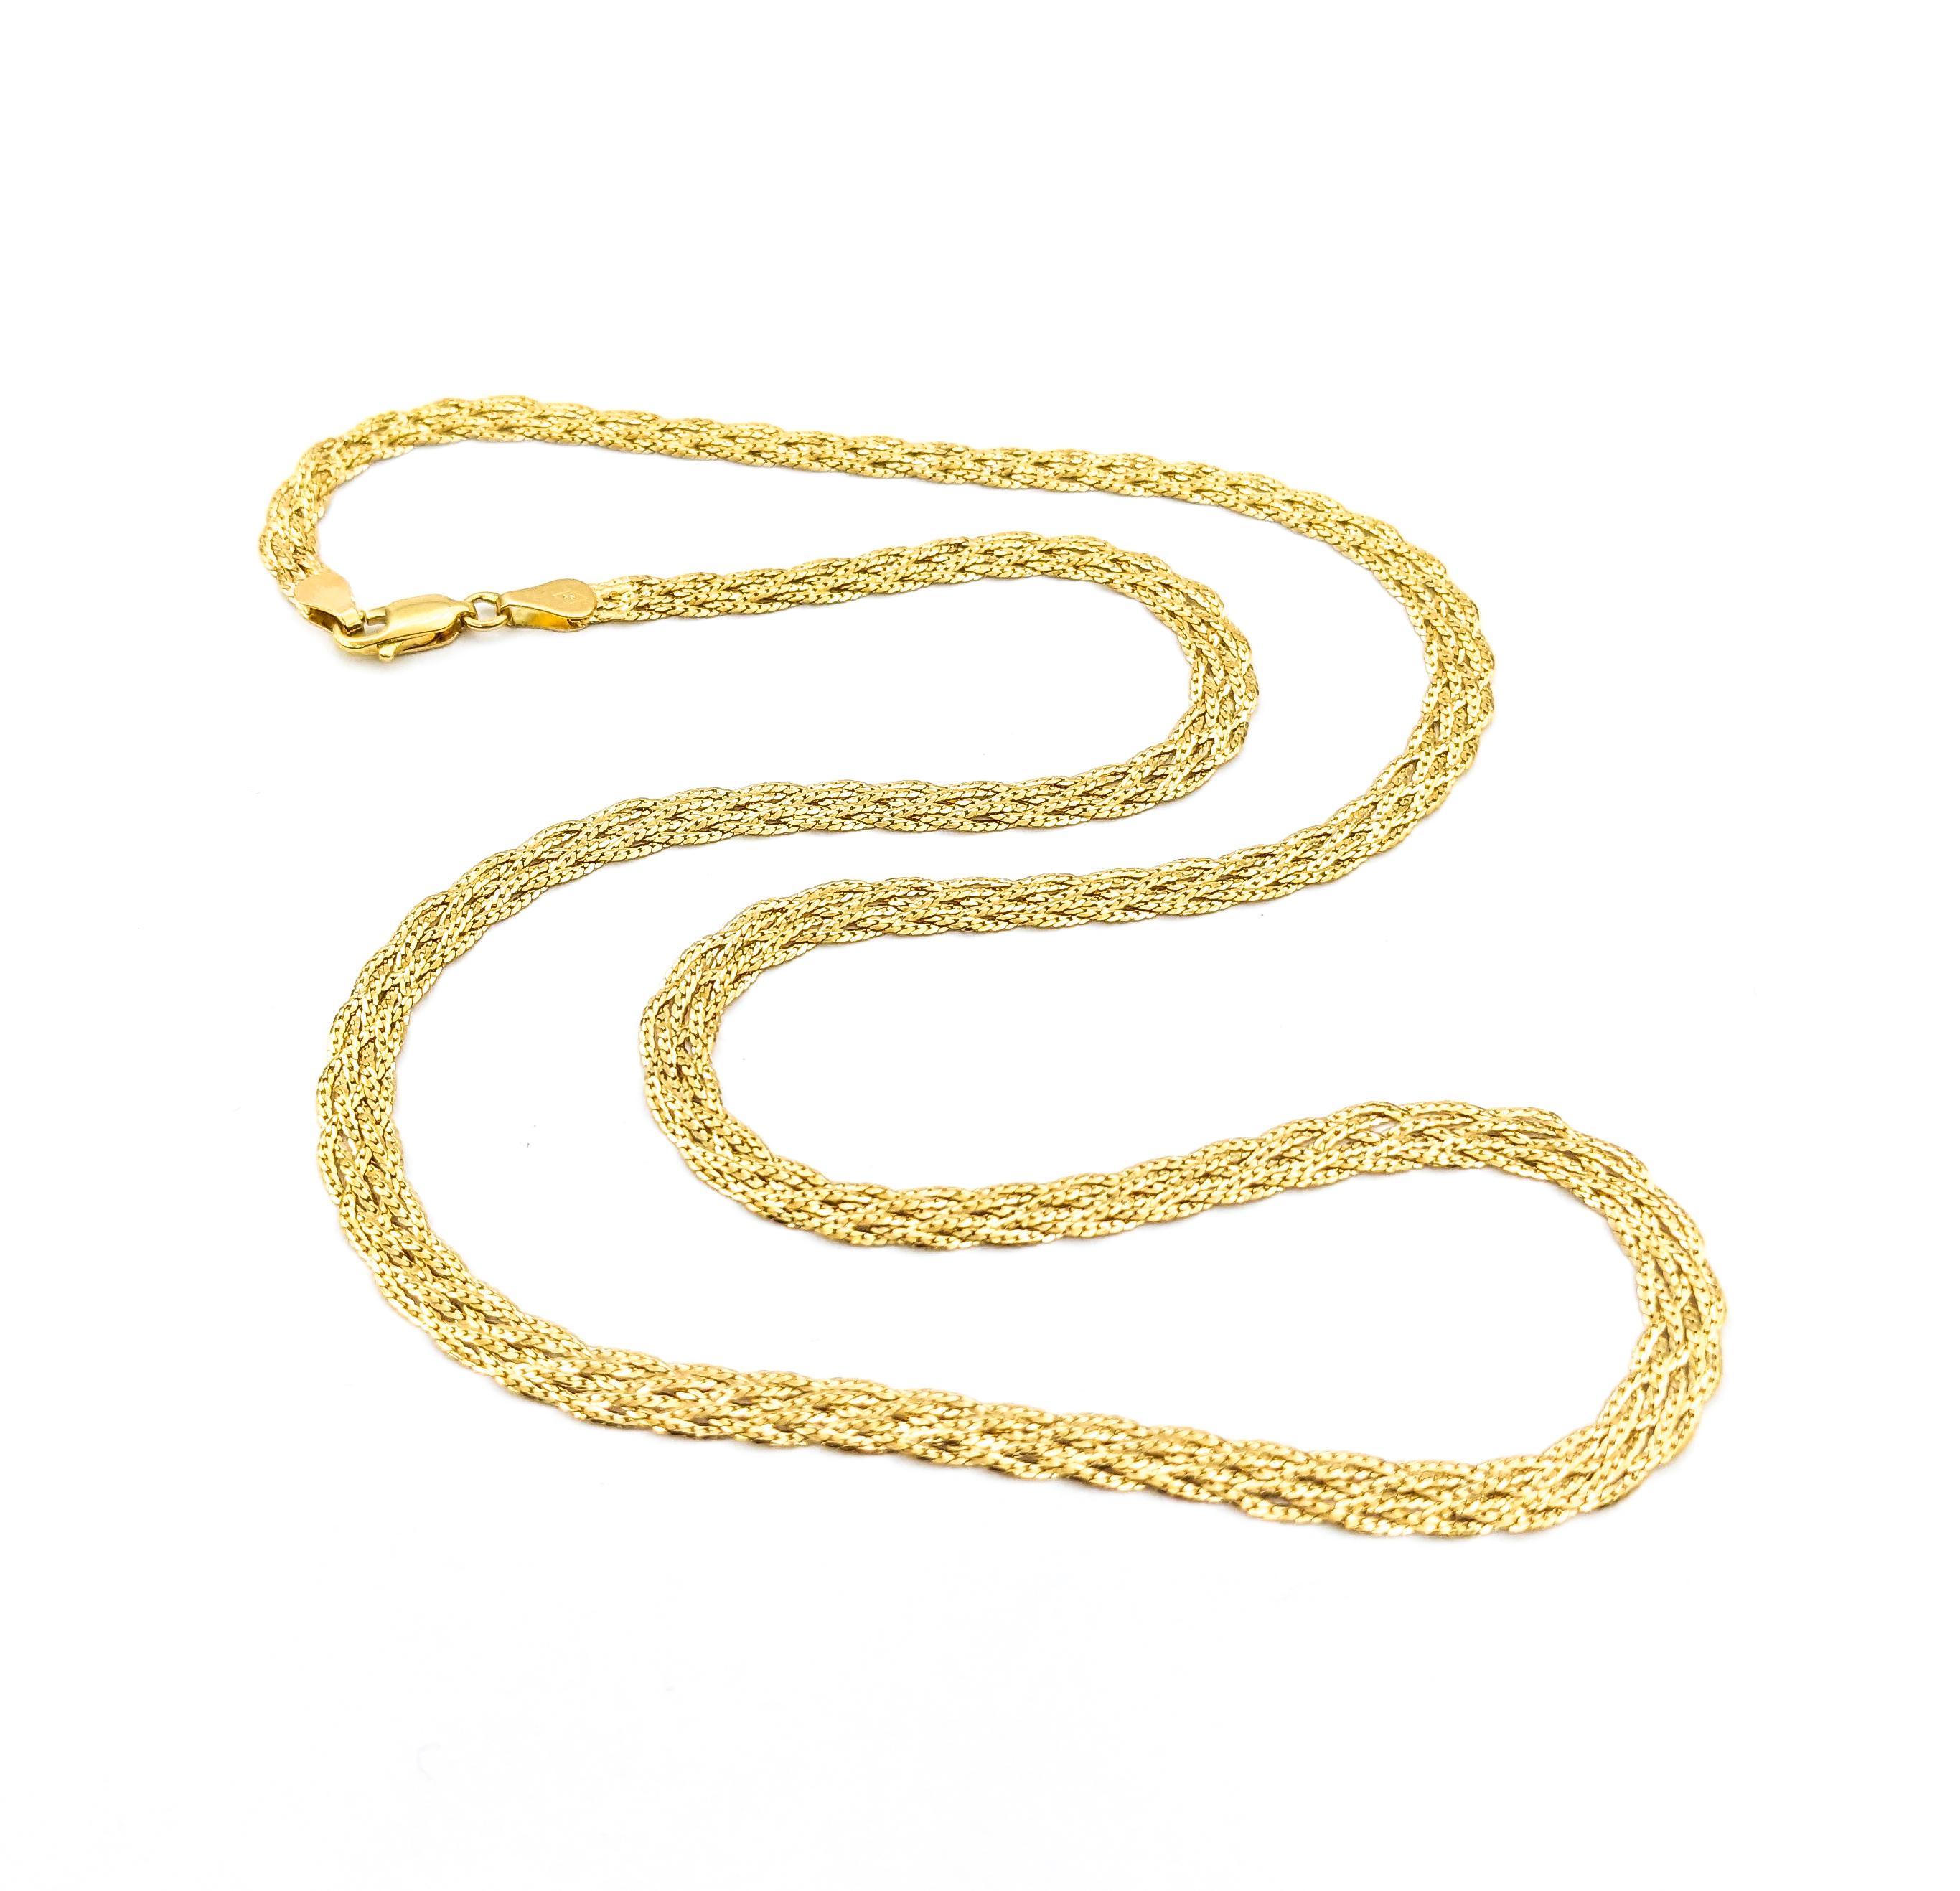 Collier à maillons tissés en or jaune


Découvrez l'élégance classique de notre collier Gold Fashion, réalisé en or jaune lustré de 14kt. Cette pièce exquise présente un design sophistiqué de liens tissés, offrant à la fois style et durabilité.